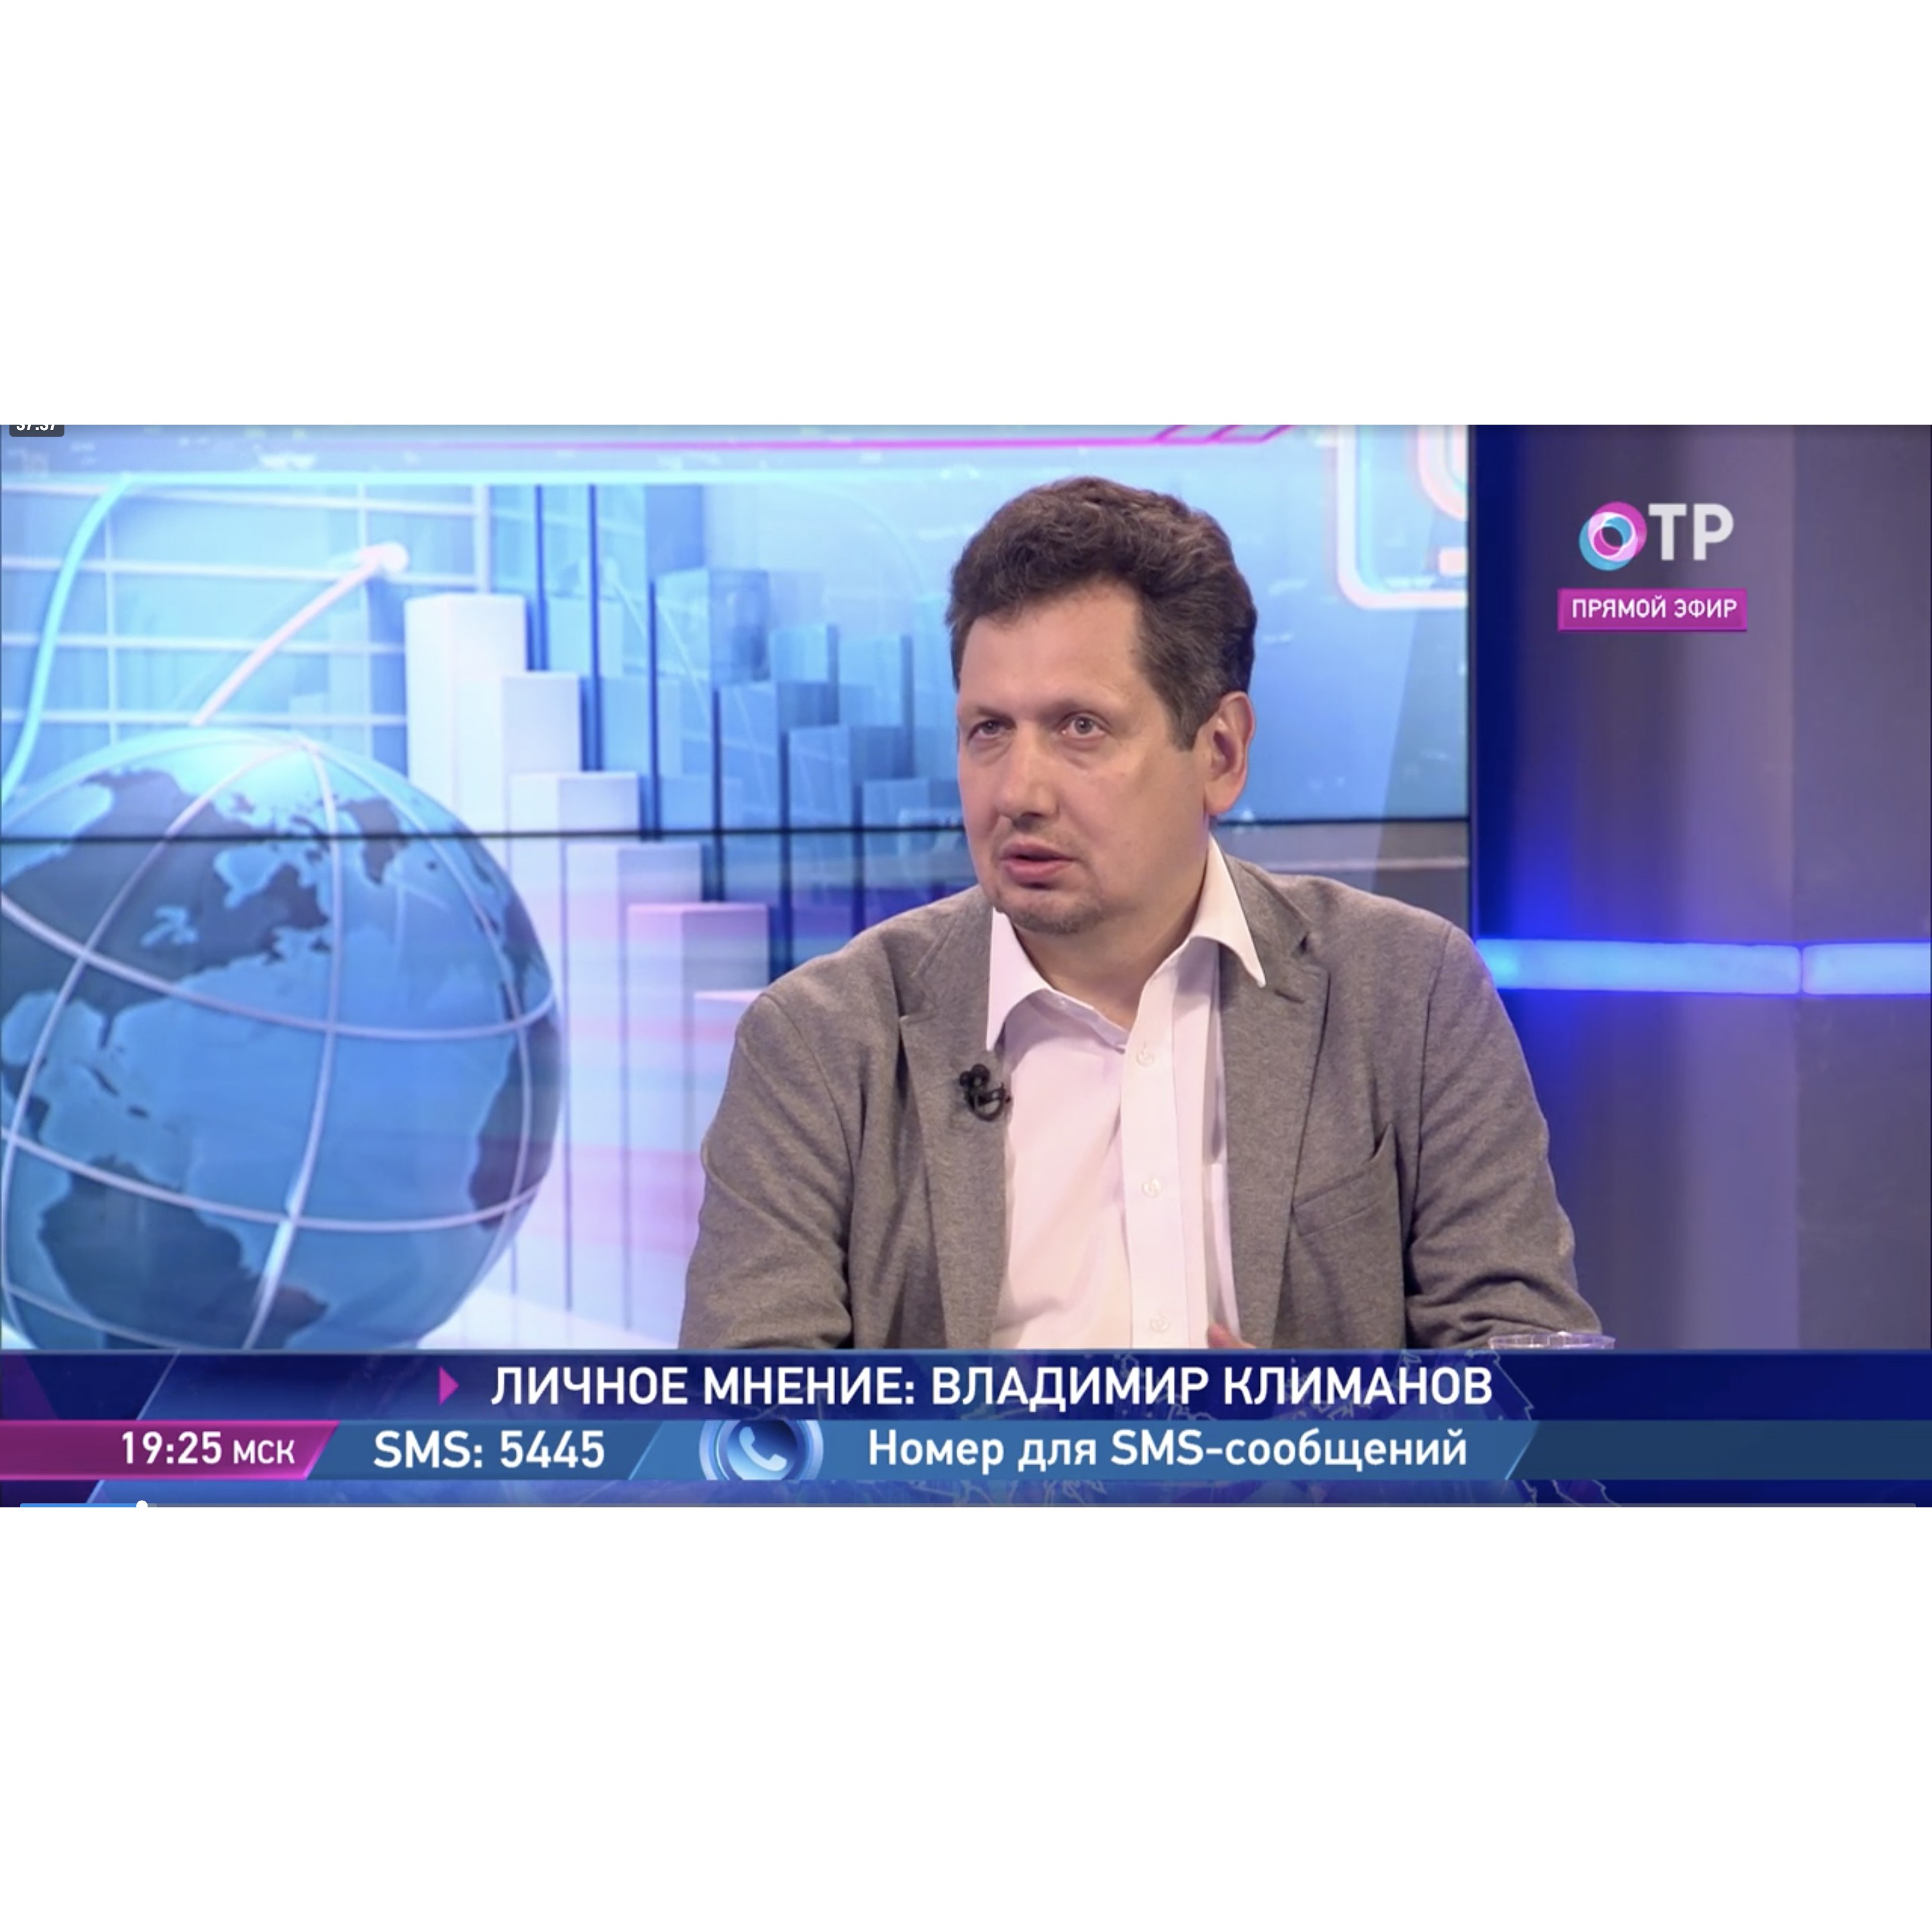 В.В. Климанов на телеканале ОТР прокомментировал связь между ростом экономики России и доходами населения